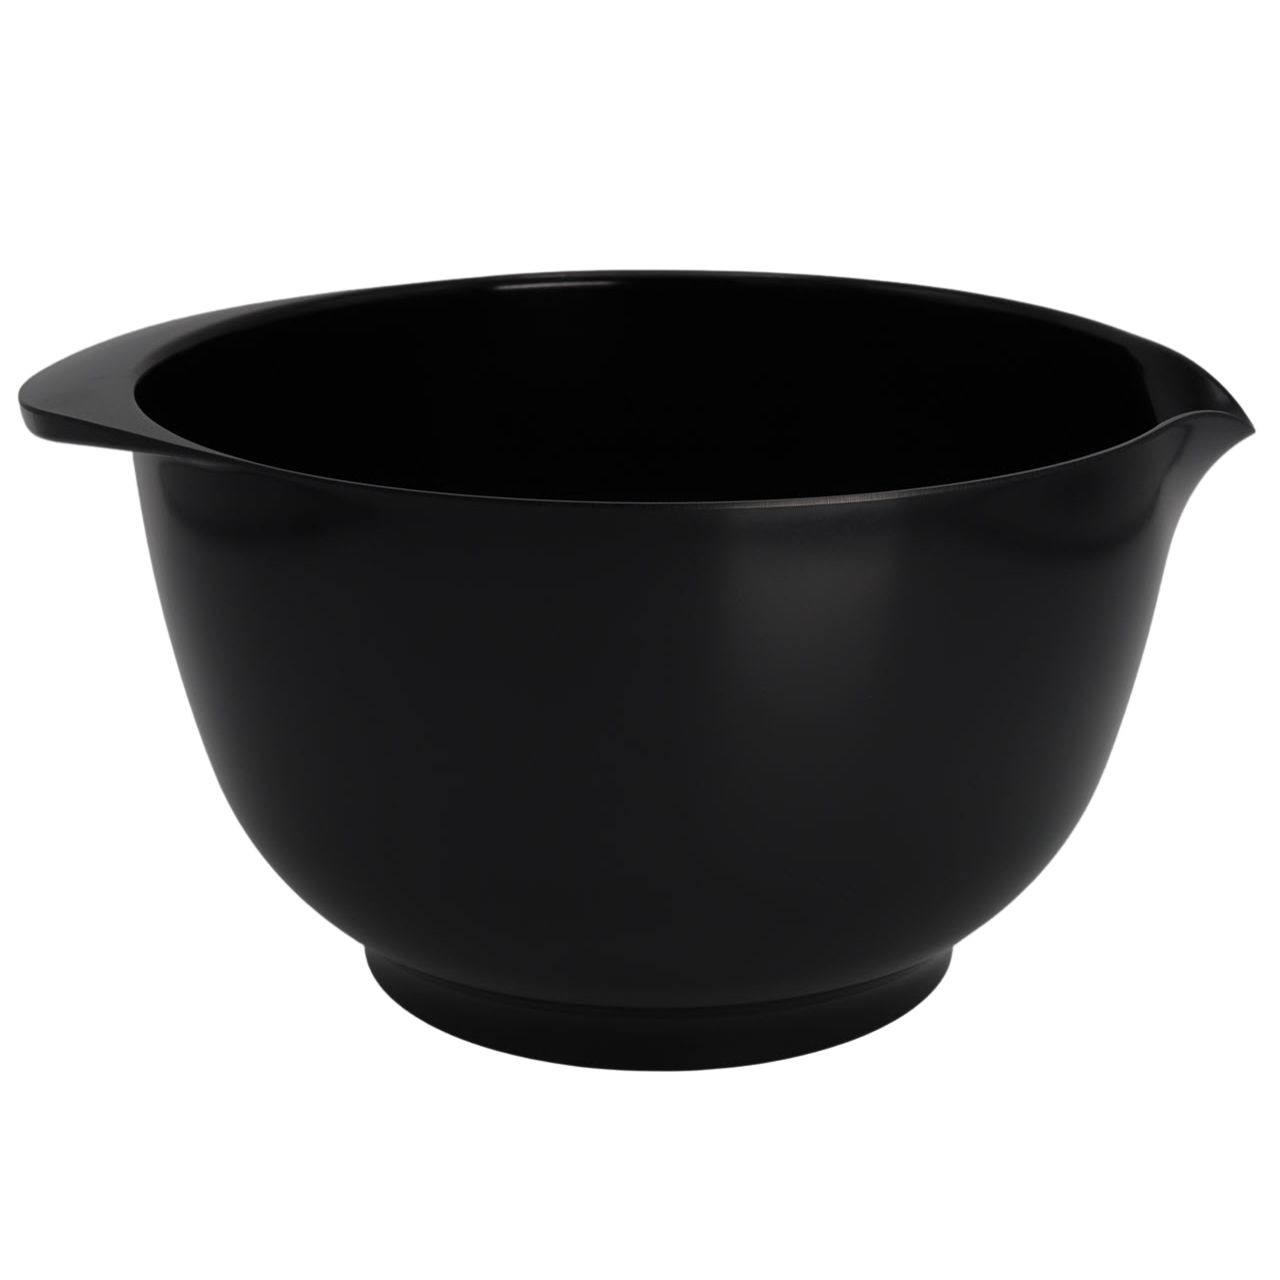 Venture benzin Forbandet Rosti Margrethe Black Mixing Bowls | Because You Cook